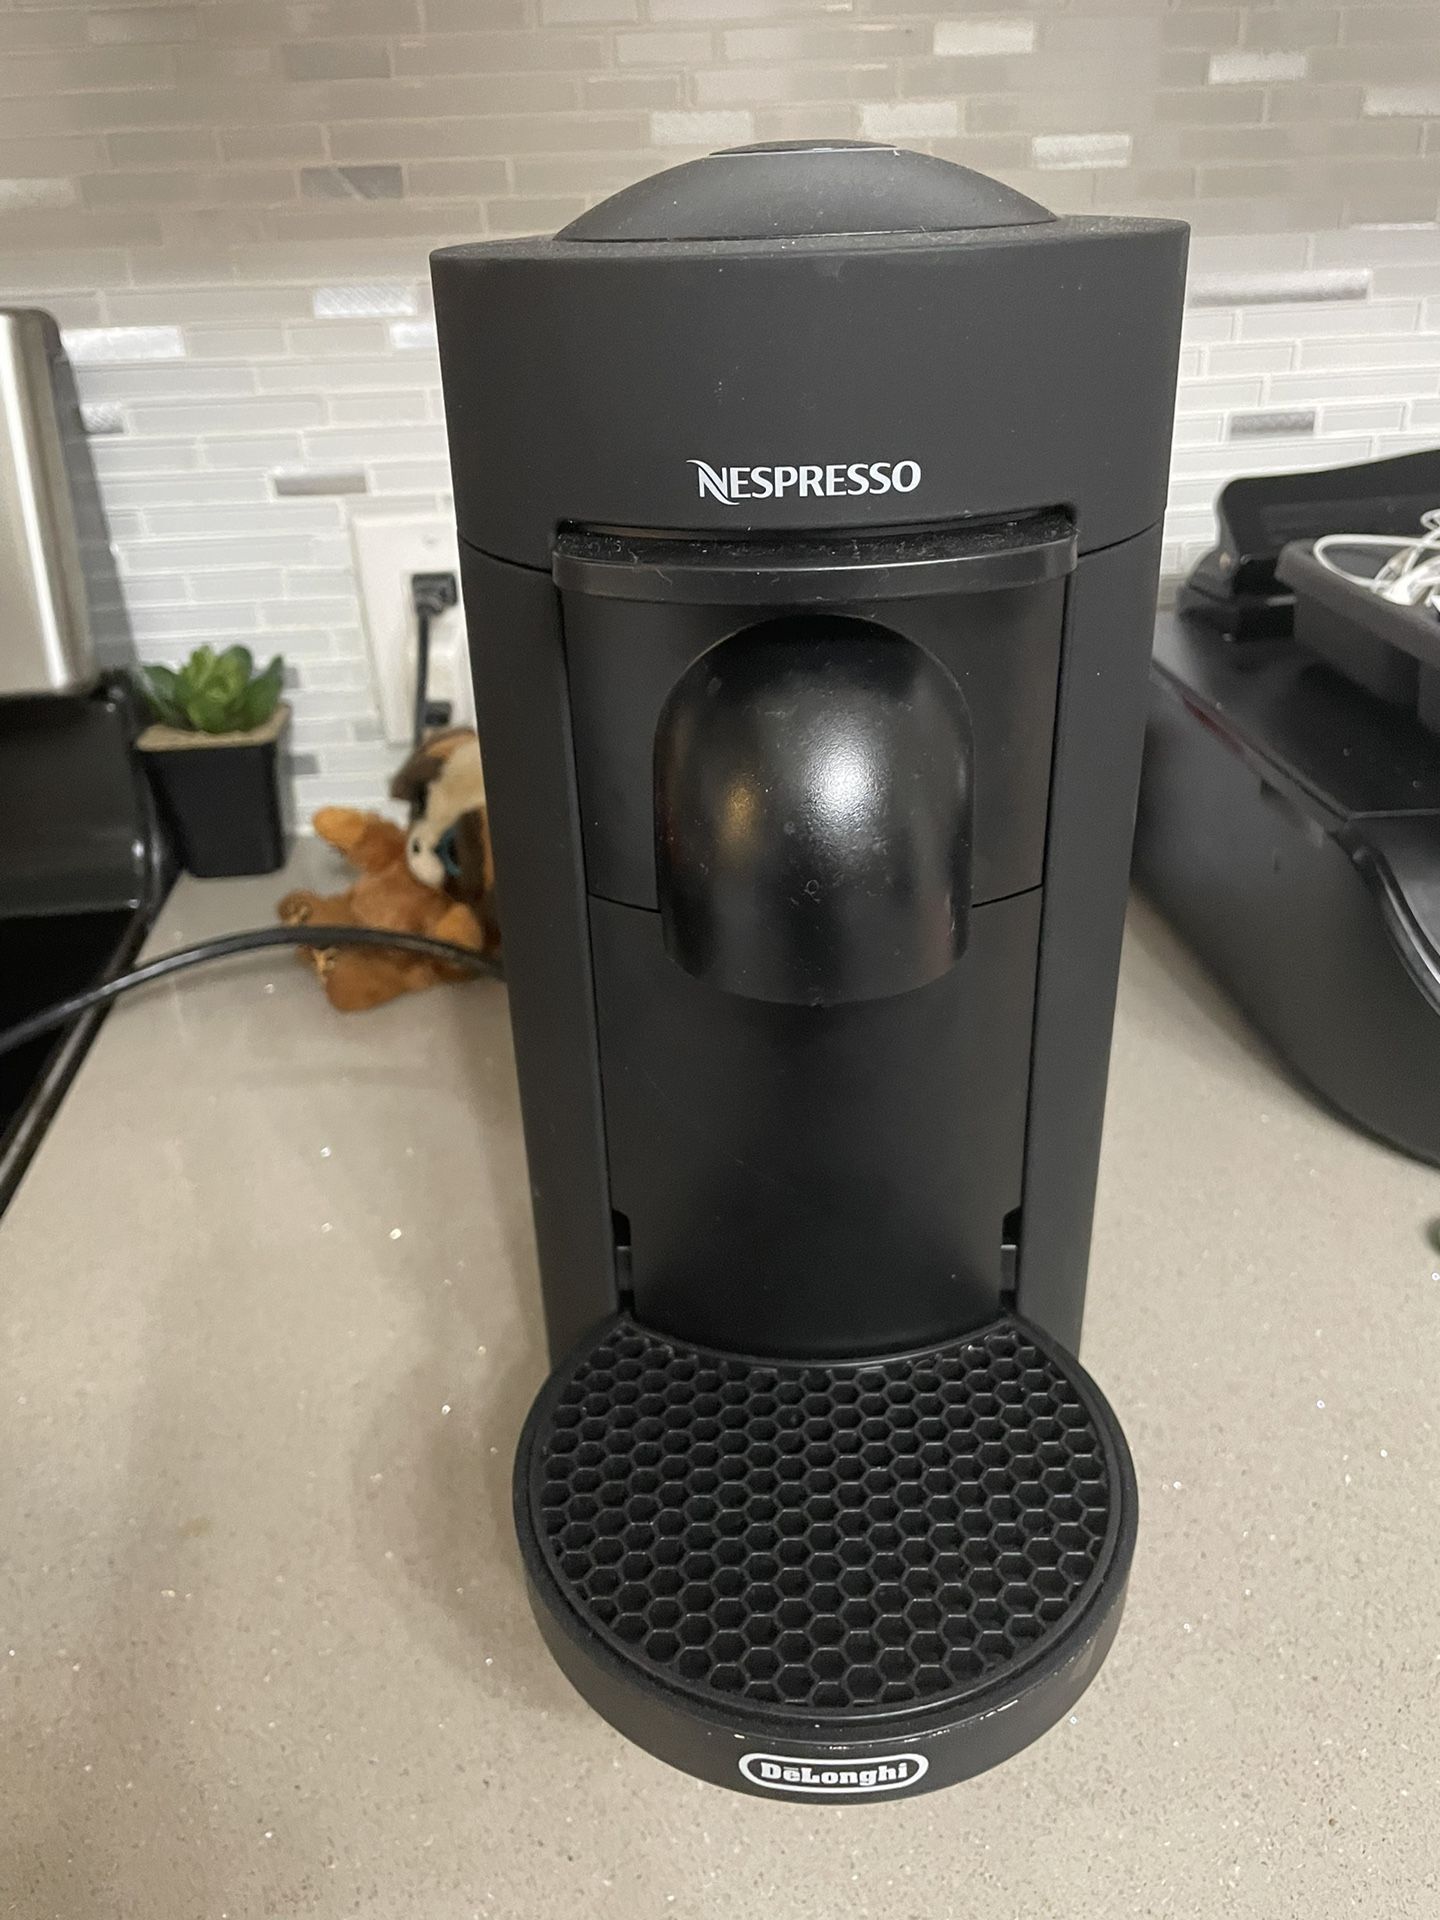 Nespresso-delonghi coffee maker 